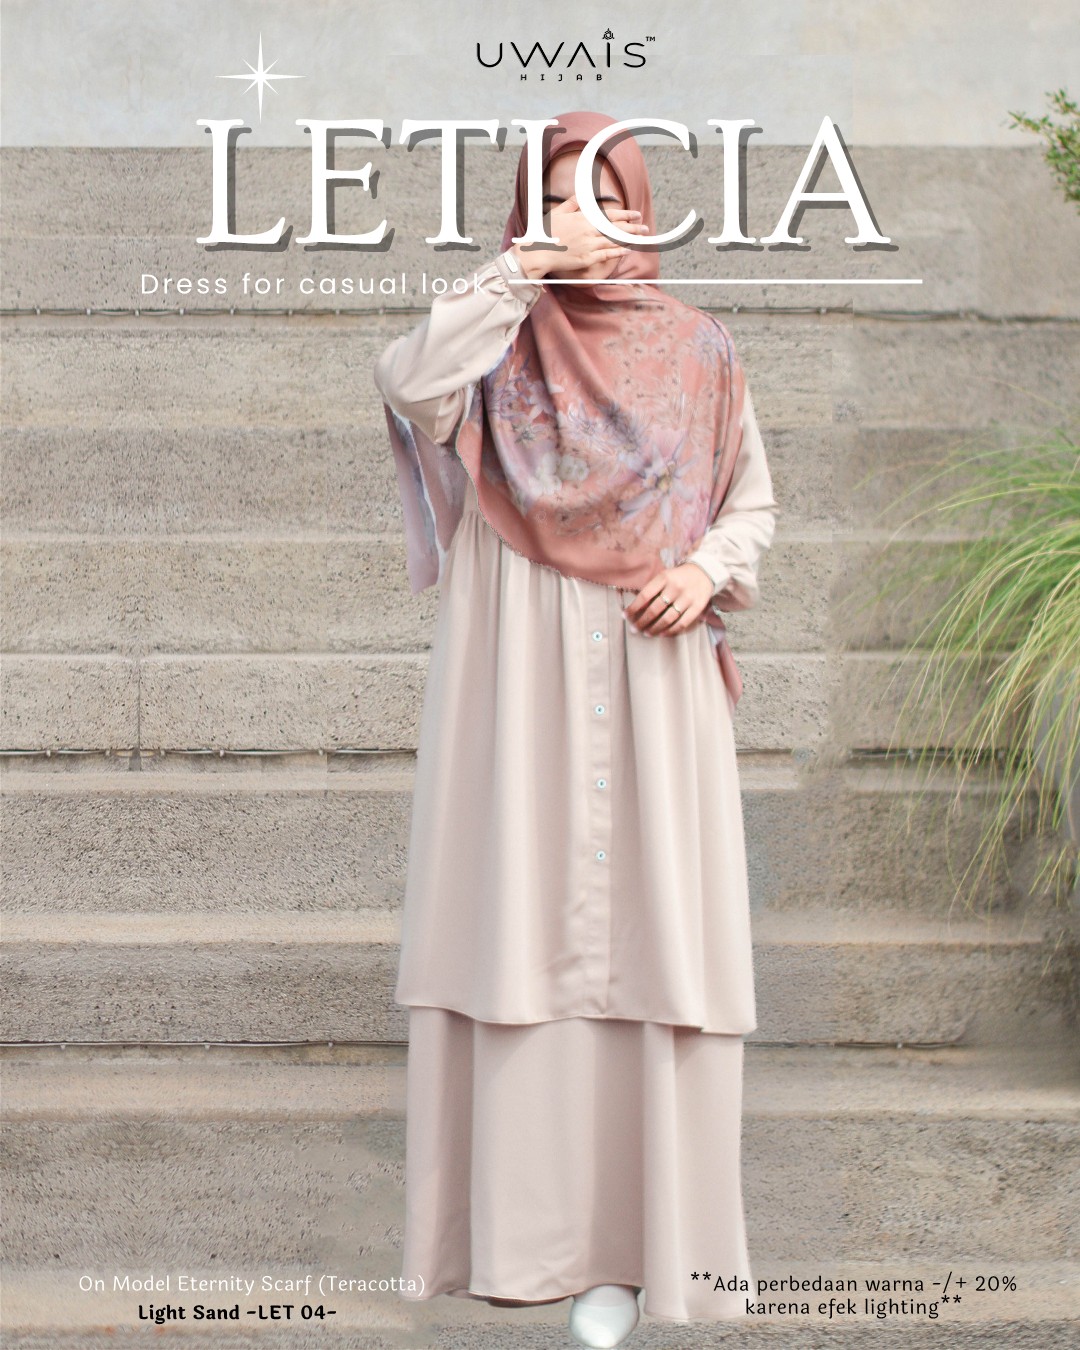 Katalog Leticia & Leanor (1)_13